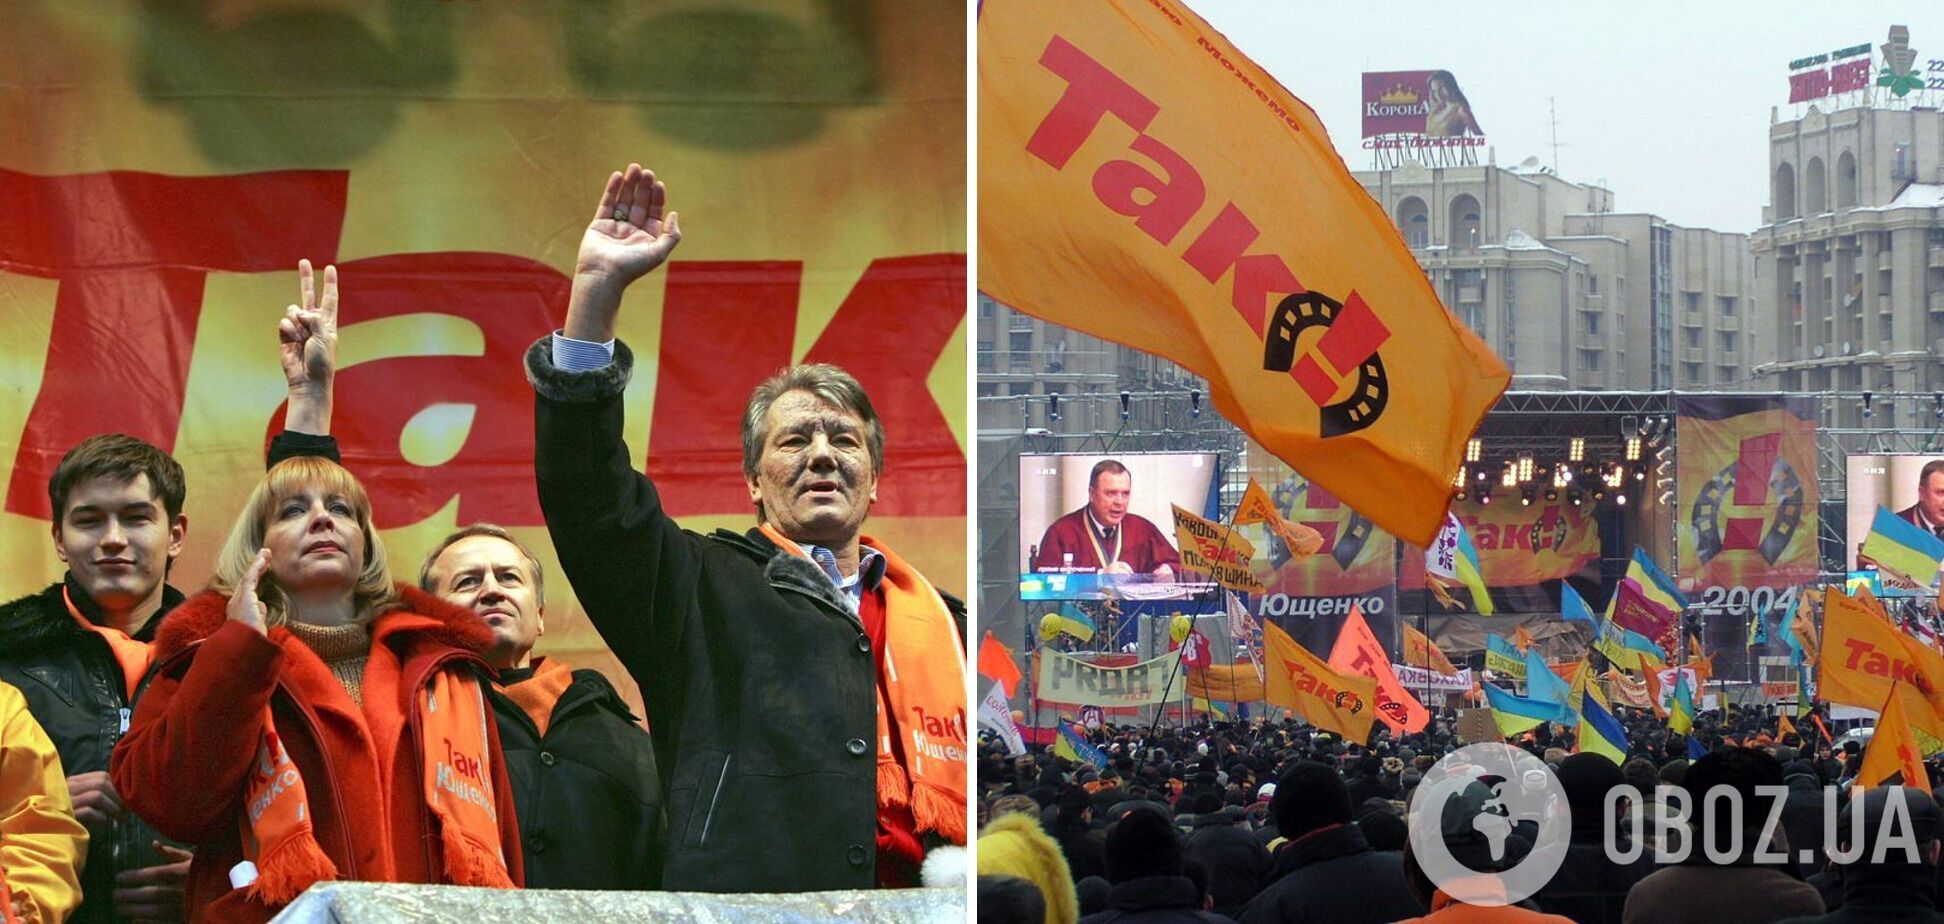 Оранжевая революция в поддержку Виктора Ющенко